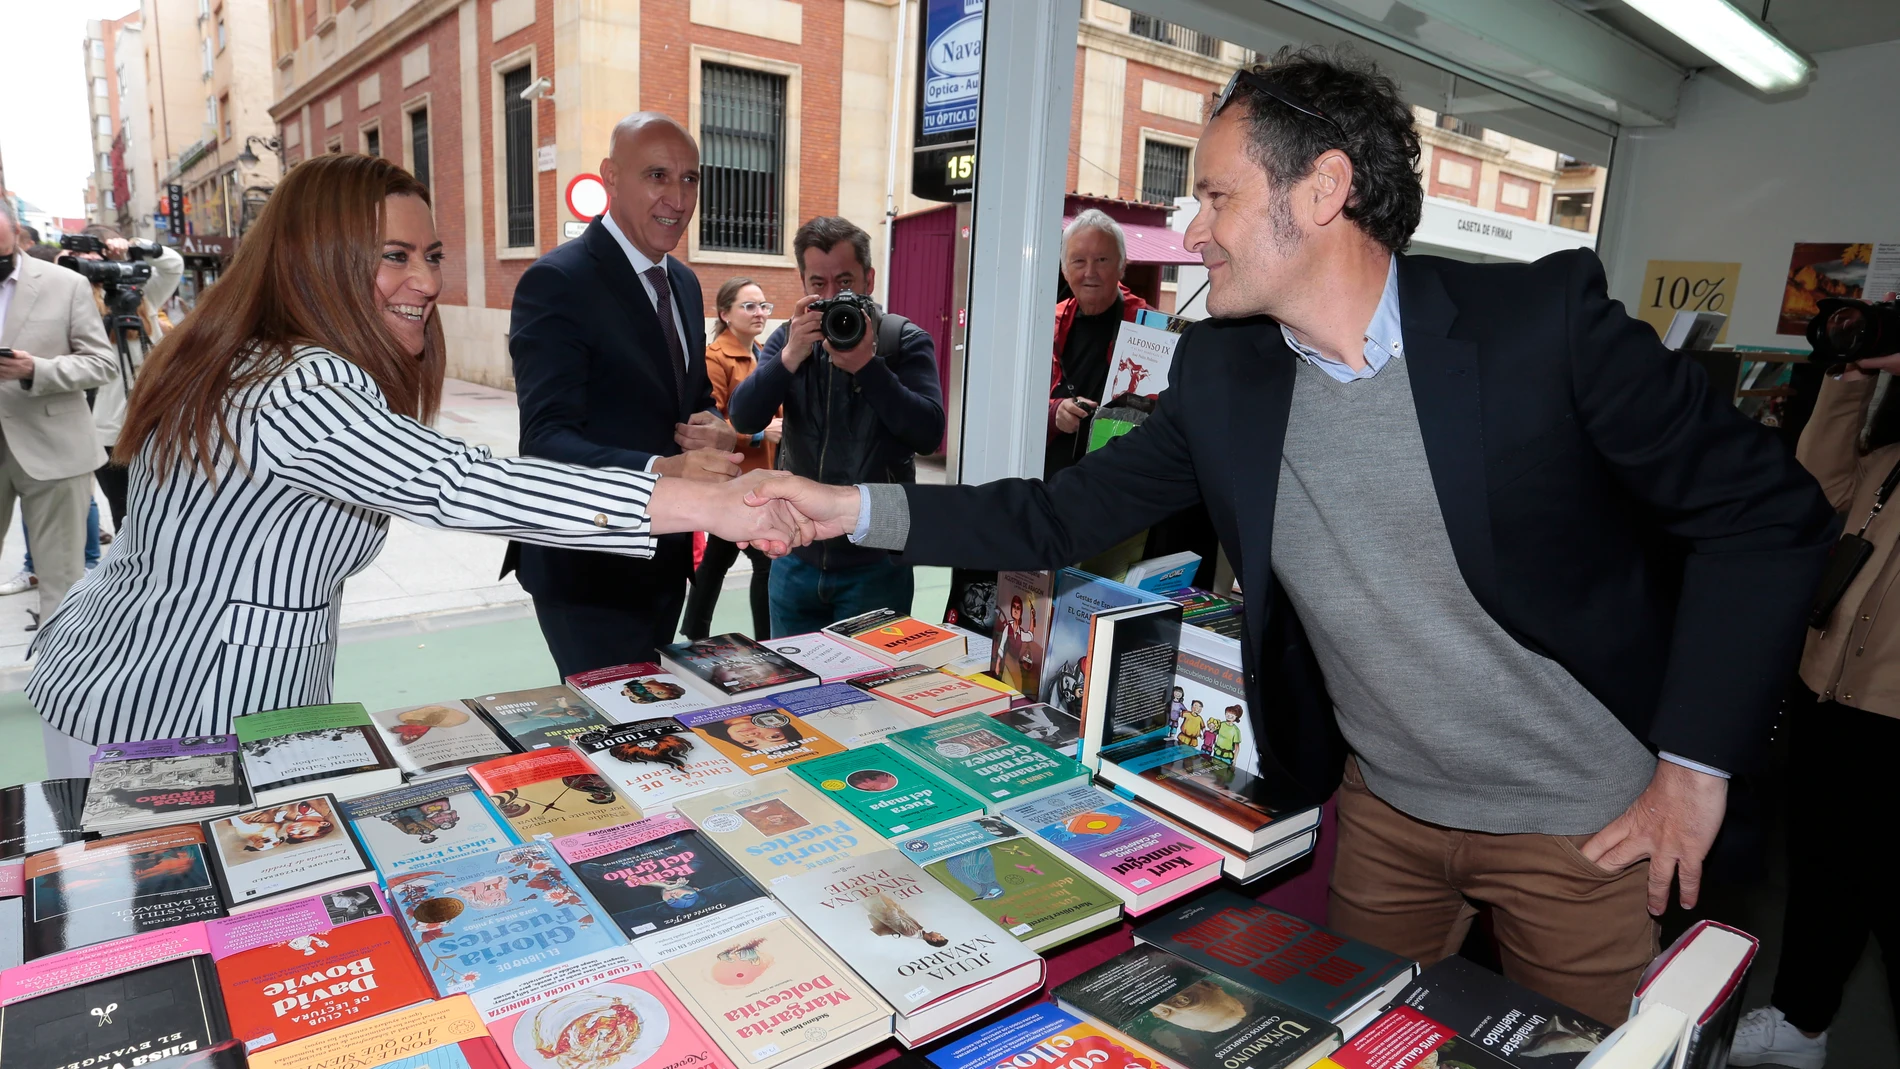 La delegada del Gobierno, Virginia Barcones, acompañada del subdelegado Faustino Sánchez y el alcalde José Antonio Diez, recorre la Feria del libro de León